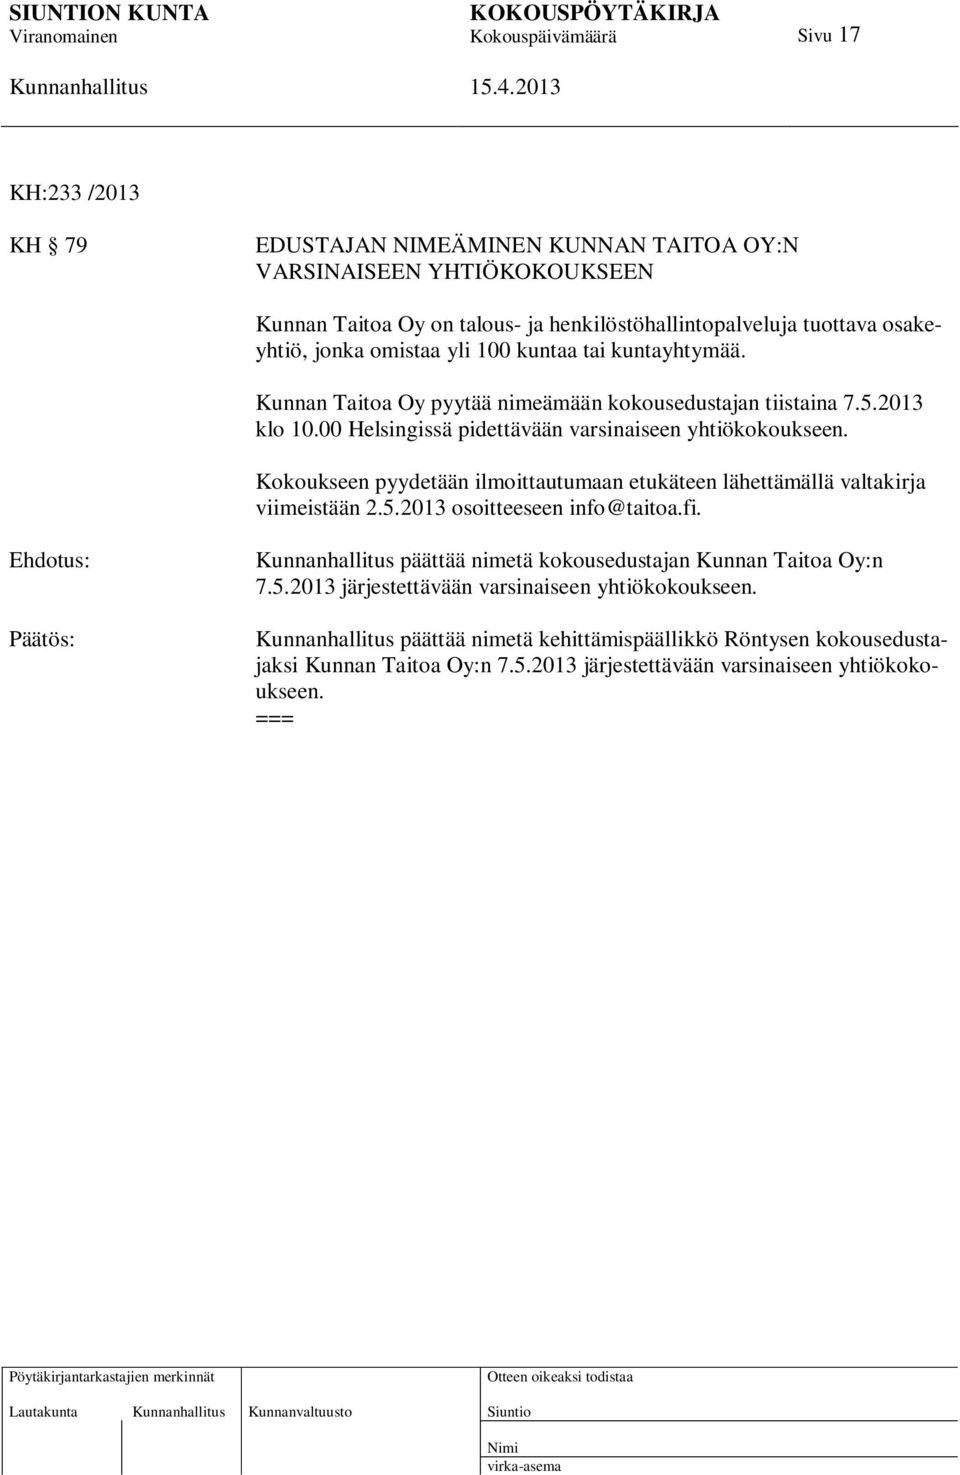 Kokoukseen pyydetään ilmoittautumaan etukäteen lähettämällä valtakirja viimeistään 2.5.2013 osoitteeseen info@taitoa.fi. Ehdotus: Päätös: päättää nimetä kokousedustajan Kunnan Taitoa Oy:n 7.5.2013 järjestettävään varsinaiseen yhtiökokoukseen.